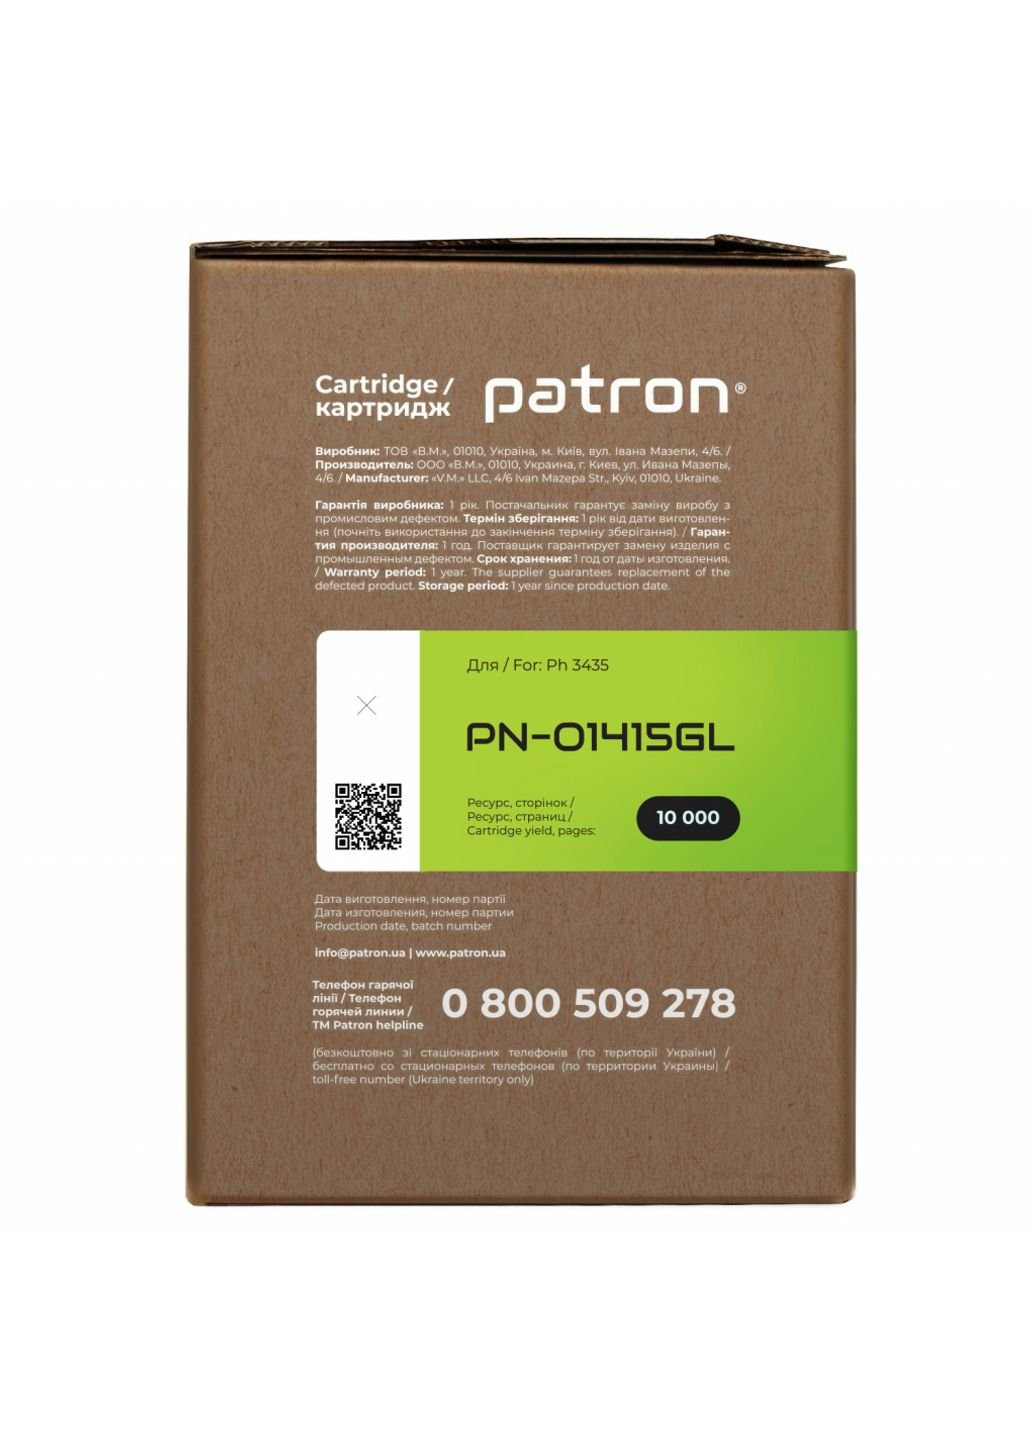 Картридж (PN-01415GL) Patron xerox 106r01415 green label (247614940)